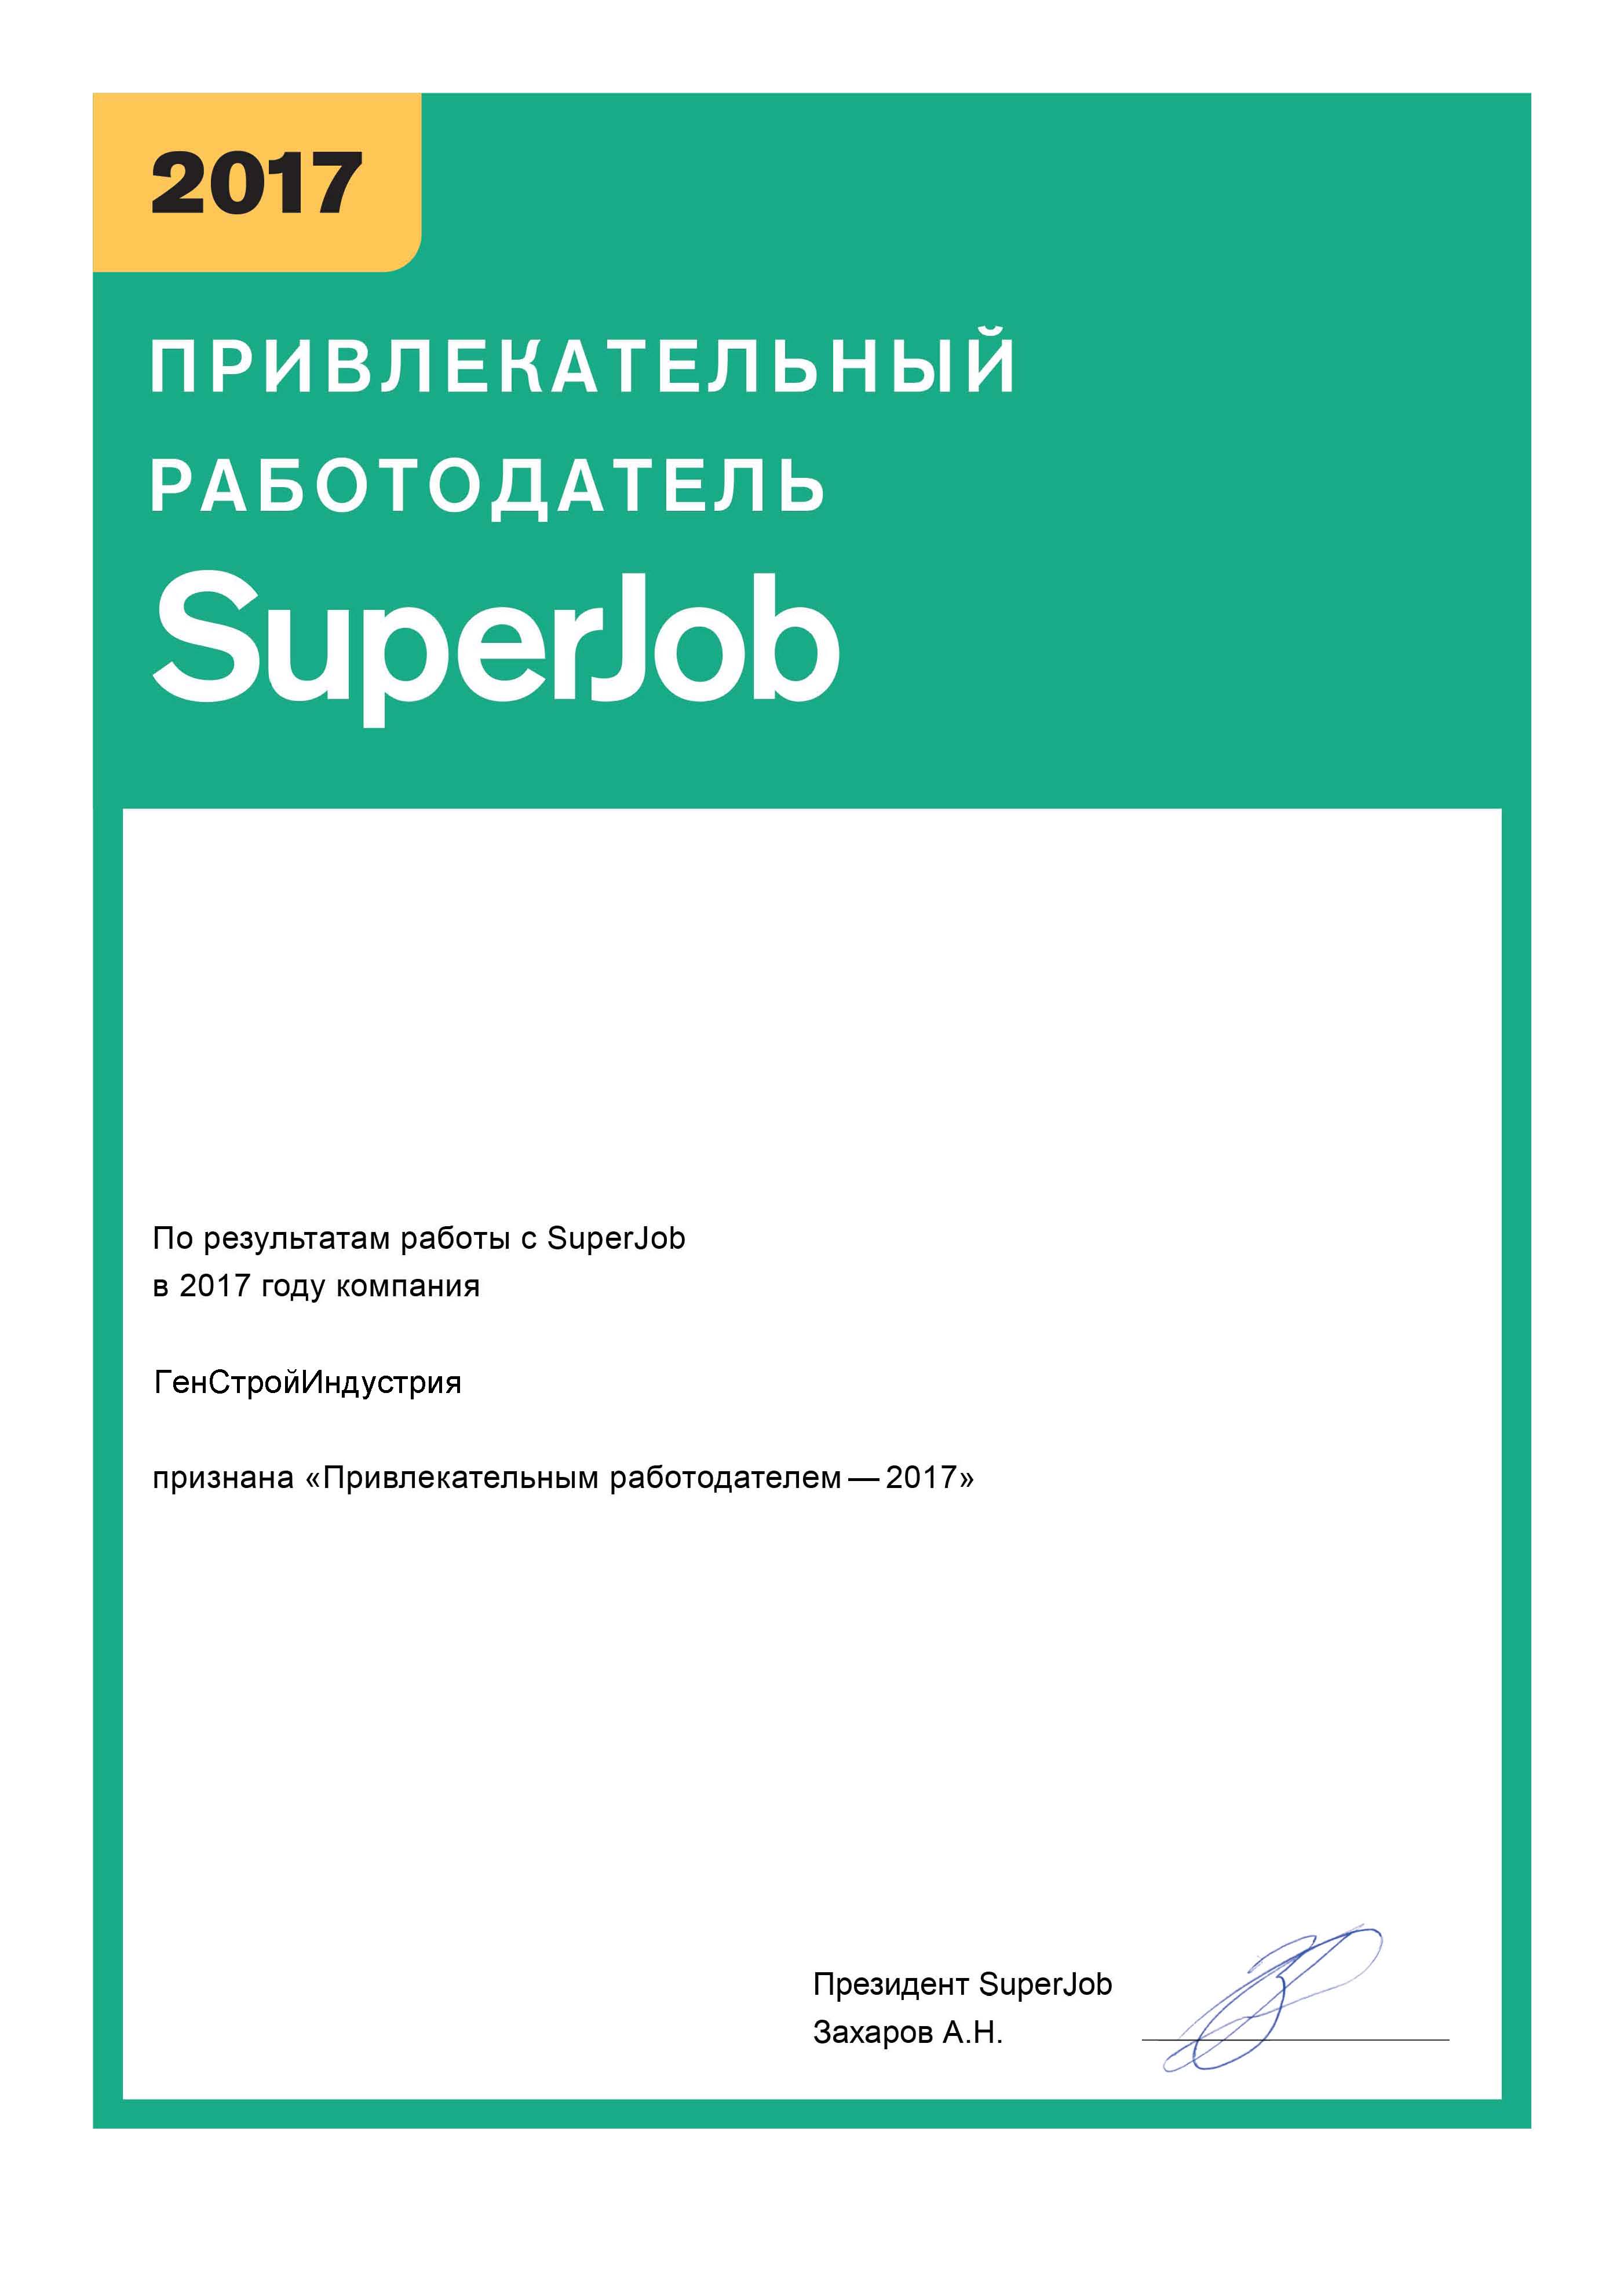 сертификат привлекательный работодатель